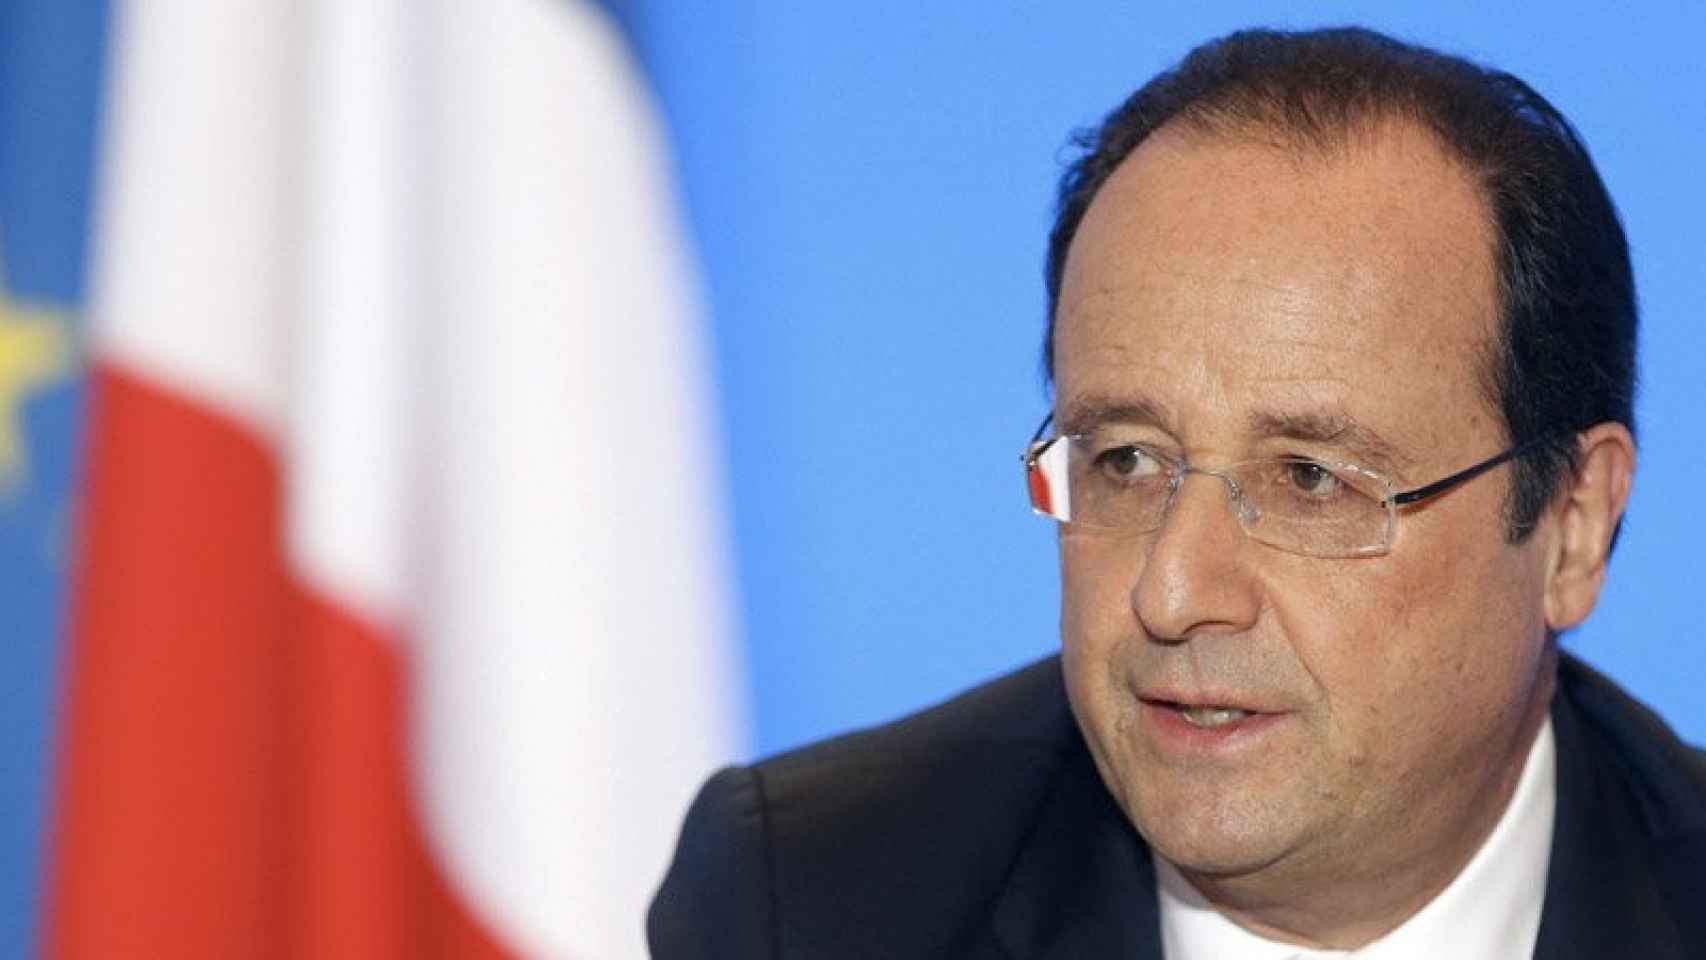 El primer ministro francés, el socialista François Hollande